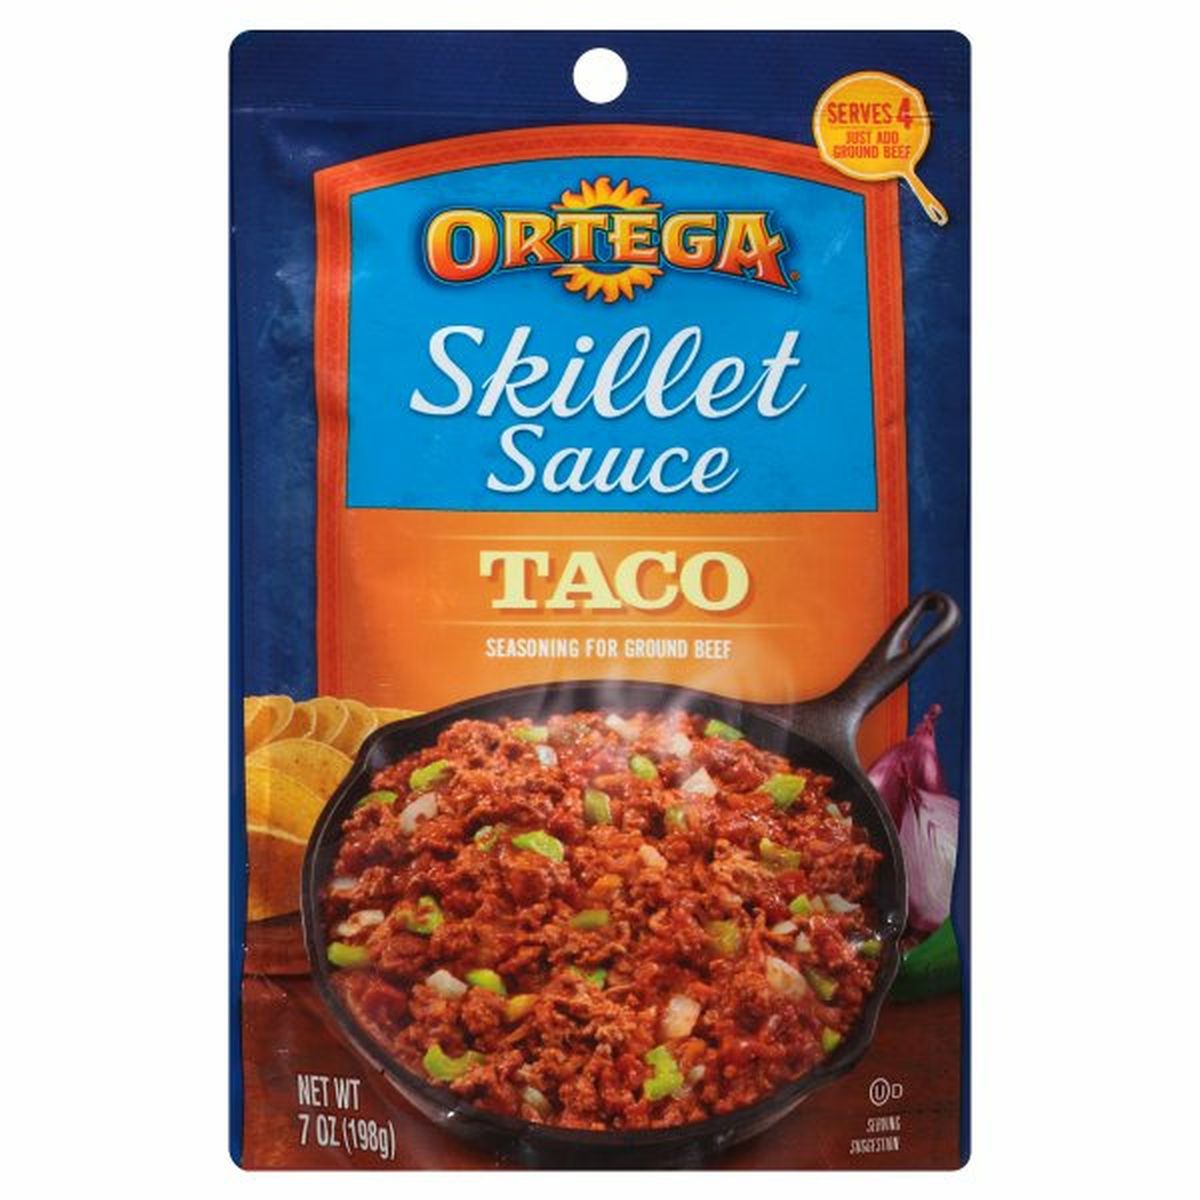 Calories in Ortega Skillet Sauce, Taco